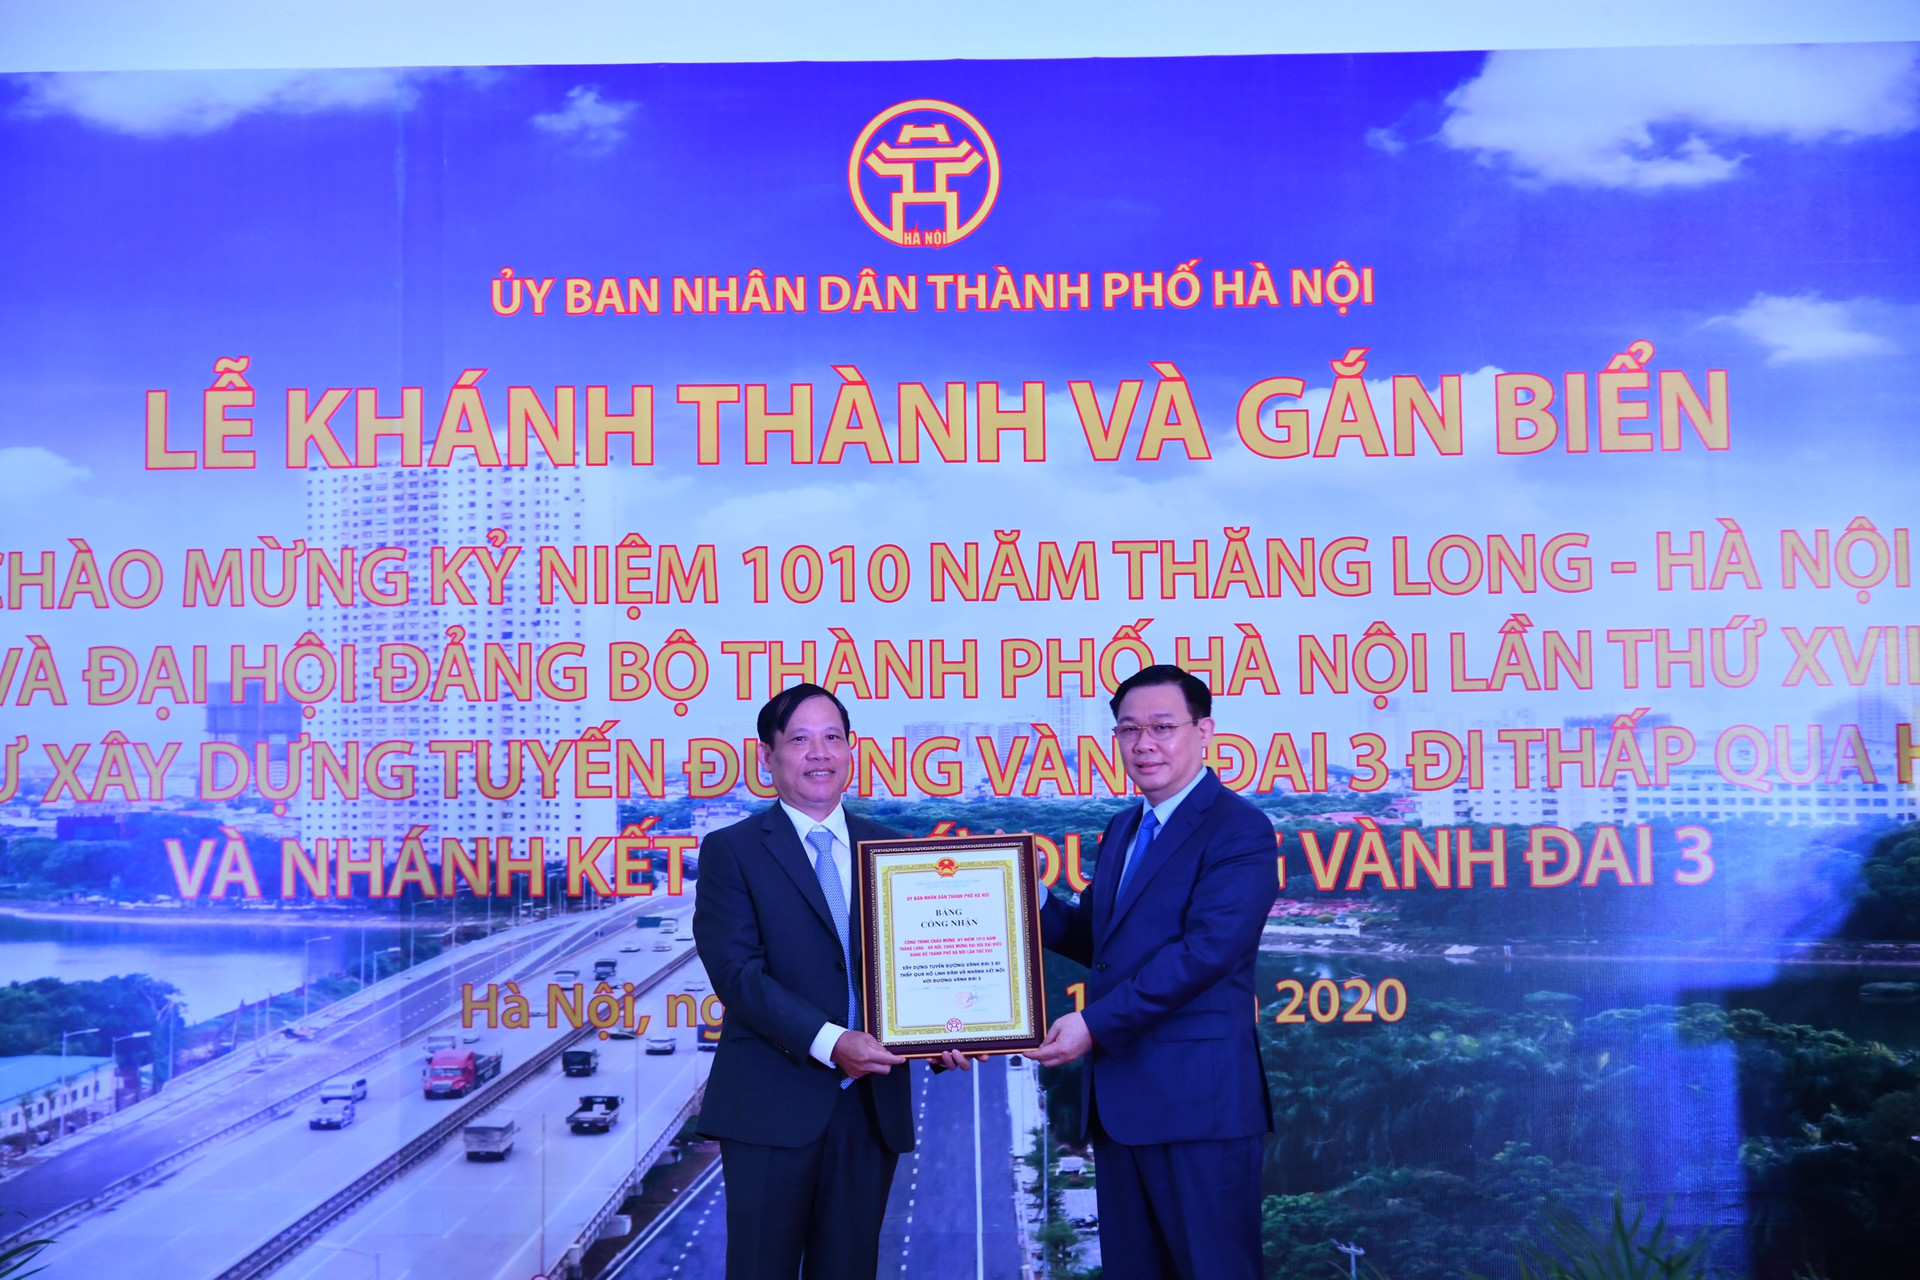 Bí thư Thành ủy Hà Nội Vương Đình Huệ trao giấy chứng nhận gắn biển công trình